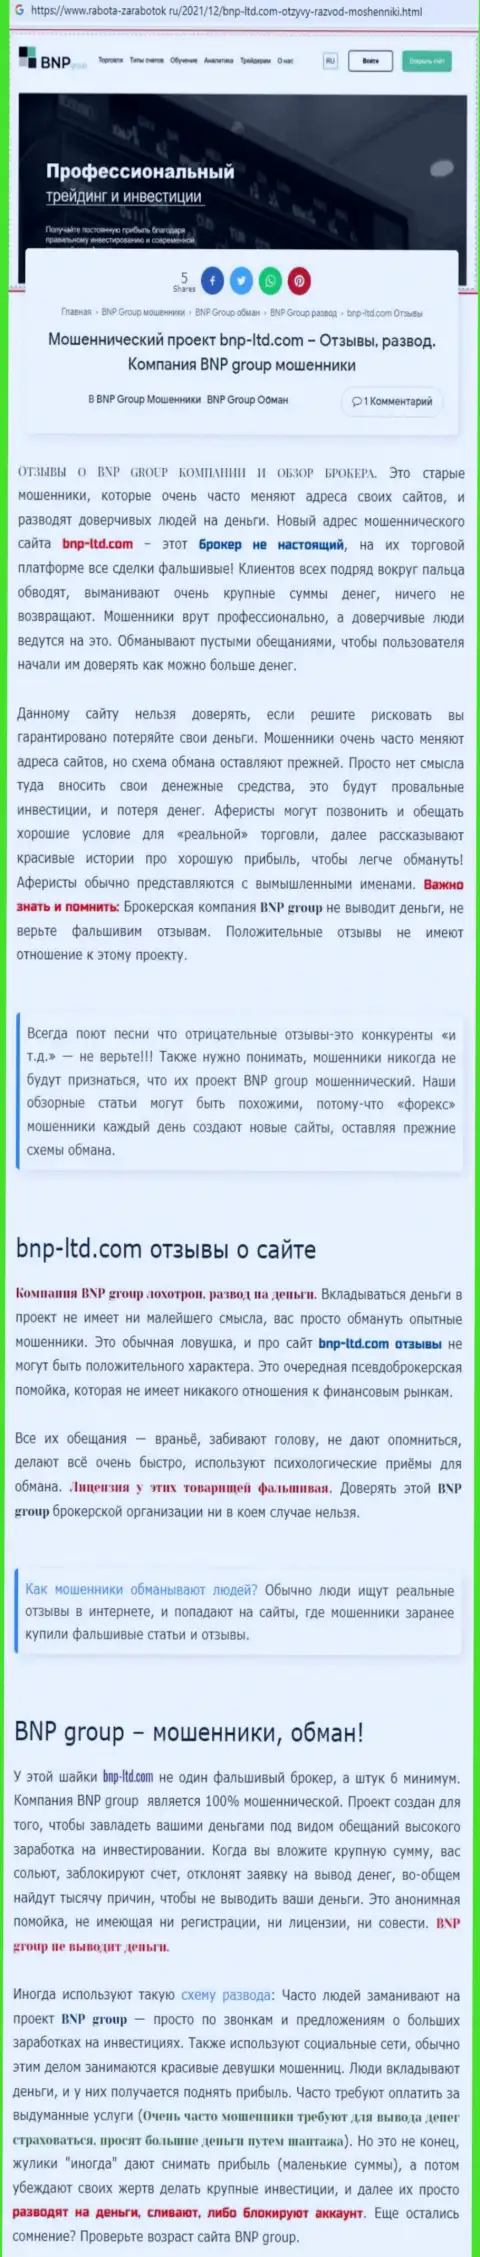 Об вложенных в BNP-Ltd Net финансовых средствах можете и не вспоминать, прикарманивают все до последнего рубля (обзор)